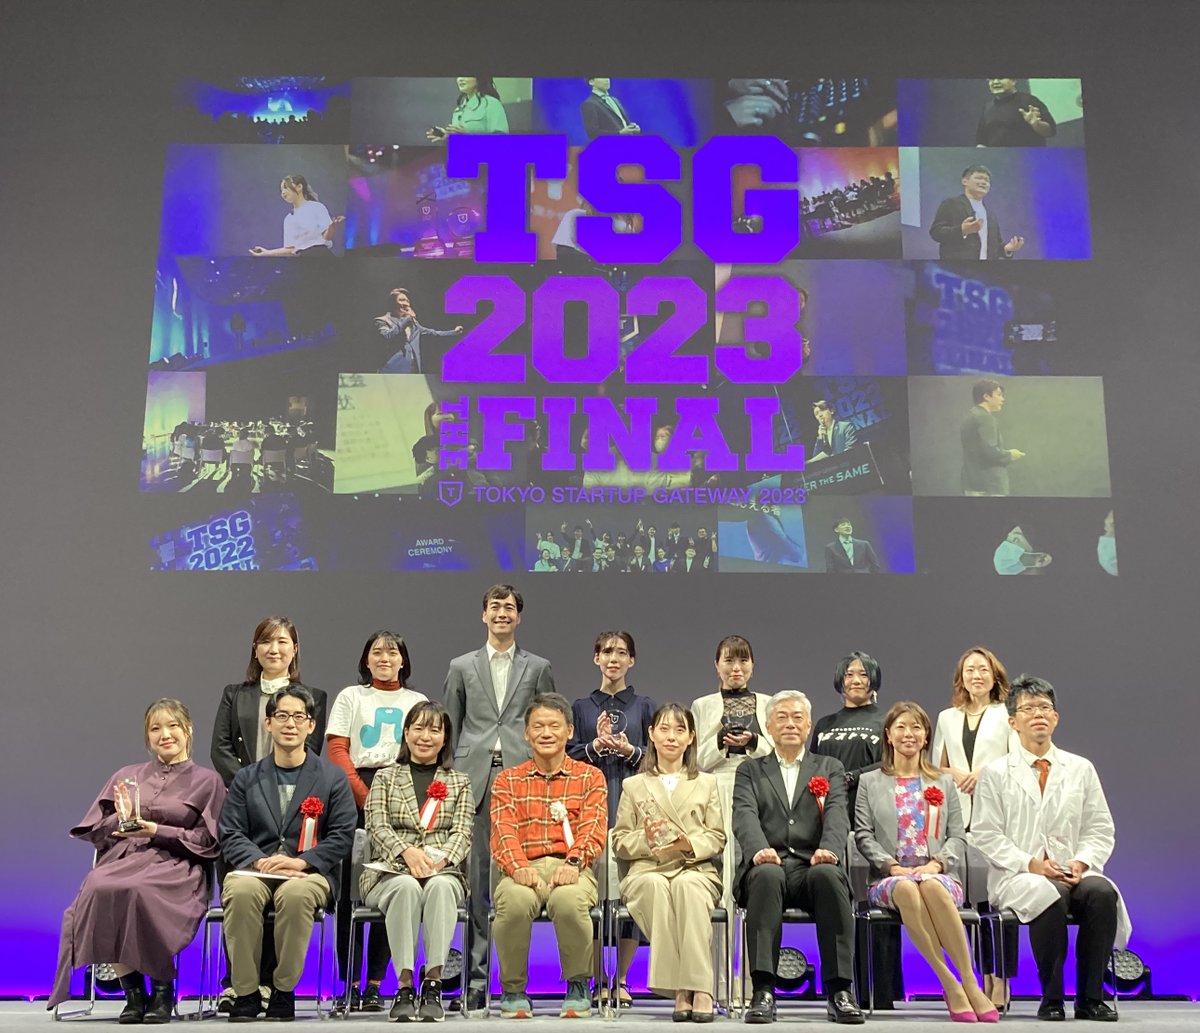 ツイート冒頭の画像: 東京都主催・ETIC事務局のビジネスプランコンテスト
TOKYO STARTUP GATEWAY2023
今日がFINALでした！

約3,000人のエントリーの中から10名がファイナリストとして登壇。

選考結果は！

✨最優秀賞✨
小野 衣子さん
テクノロジーの力で犯罪から子どもを守るAI防犯アプリ

#TSG2023
#その夢を眠らせるな 